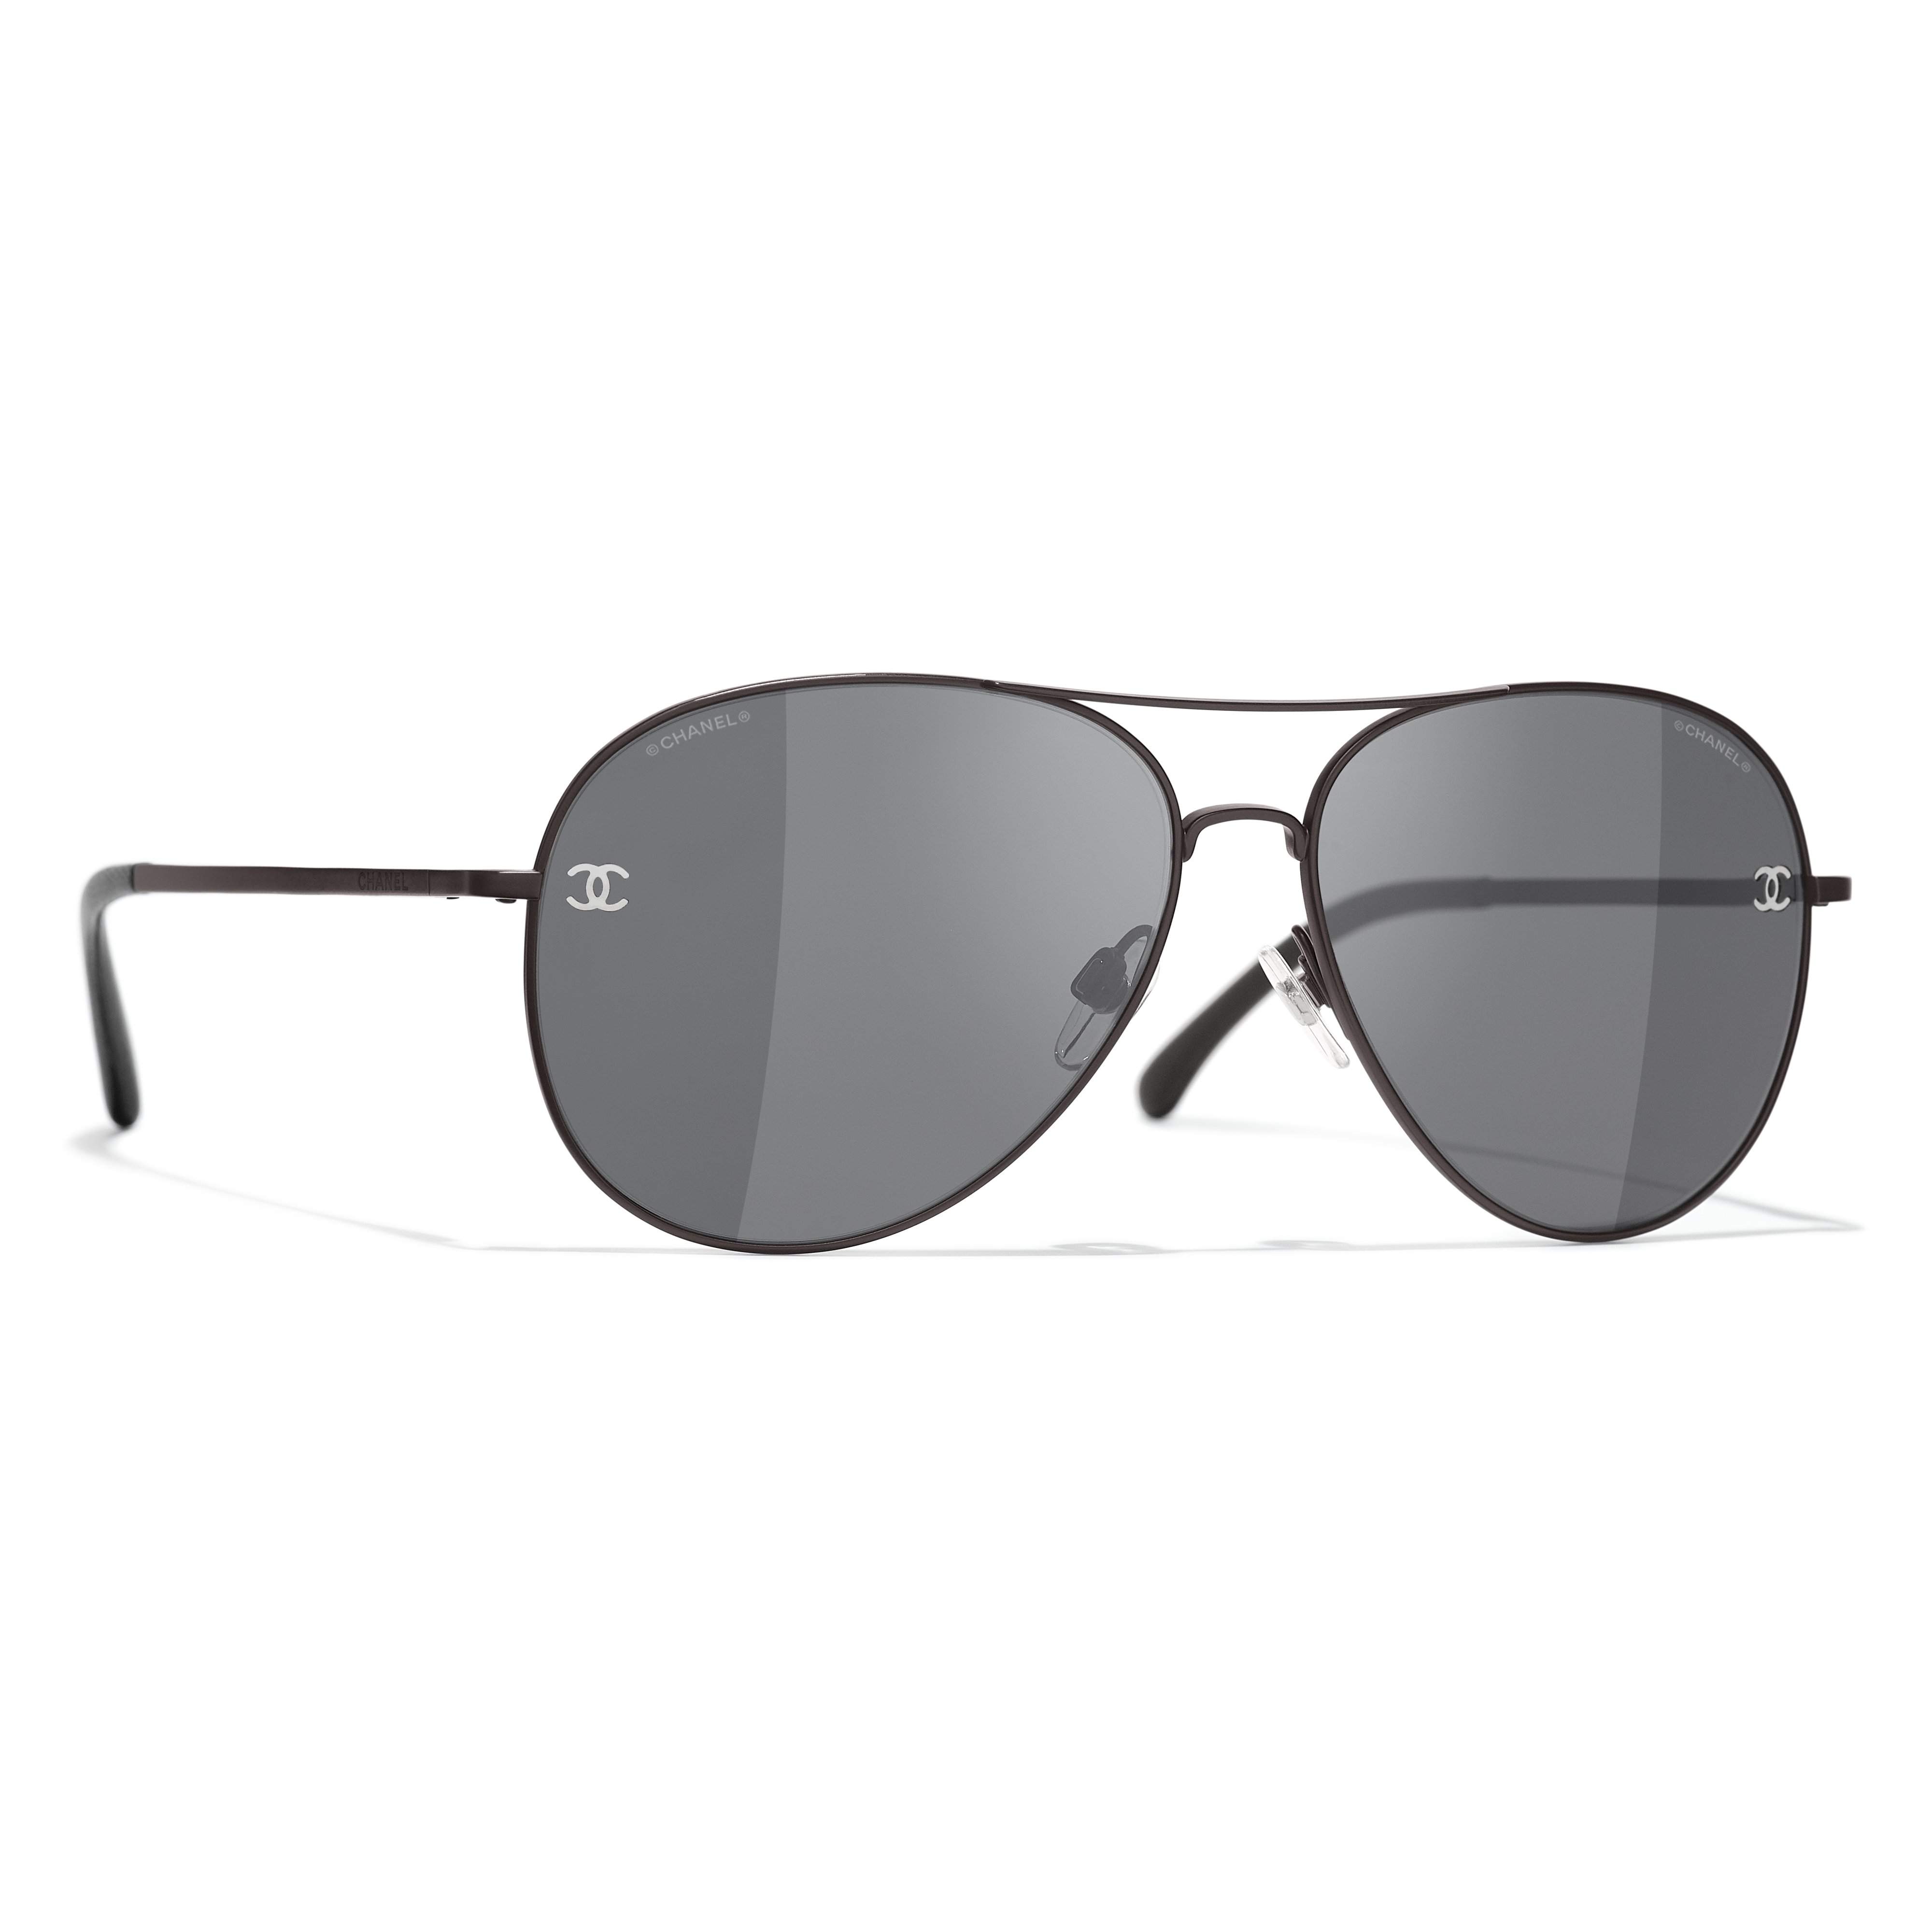 Sunglasses Chanel Black in Plastic - 30791895